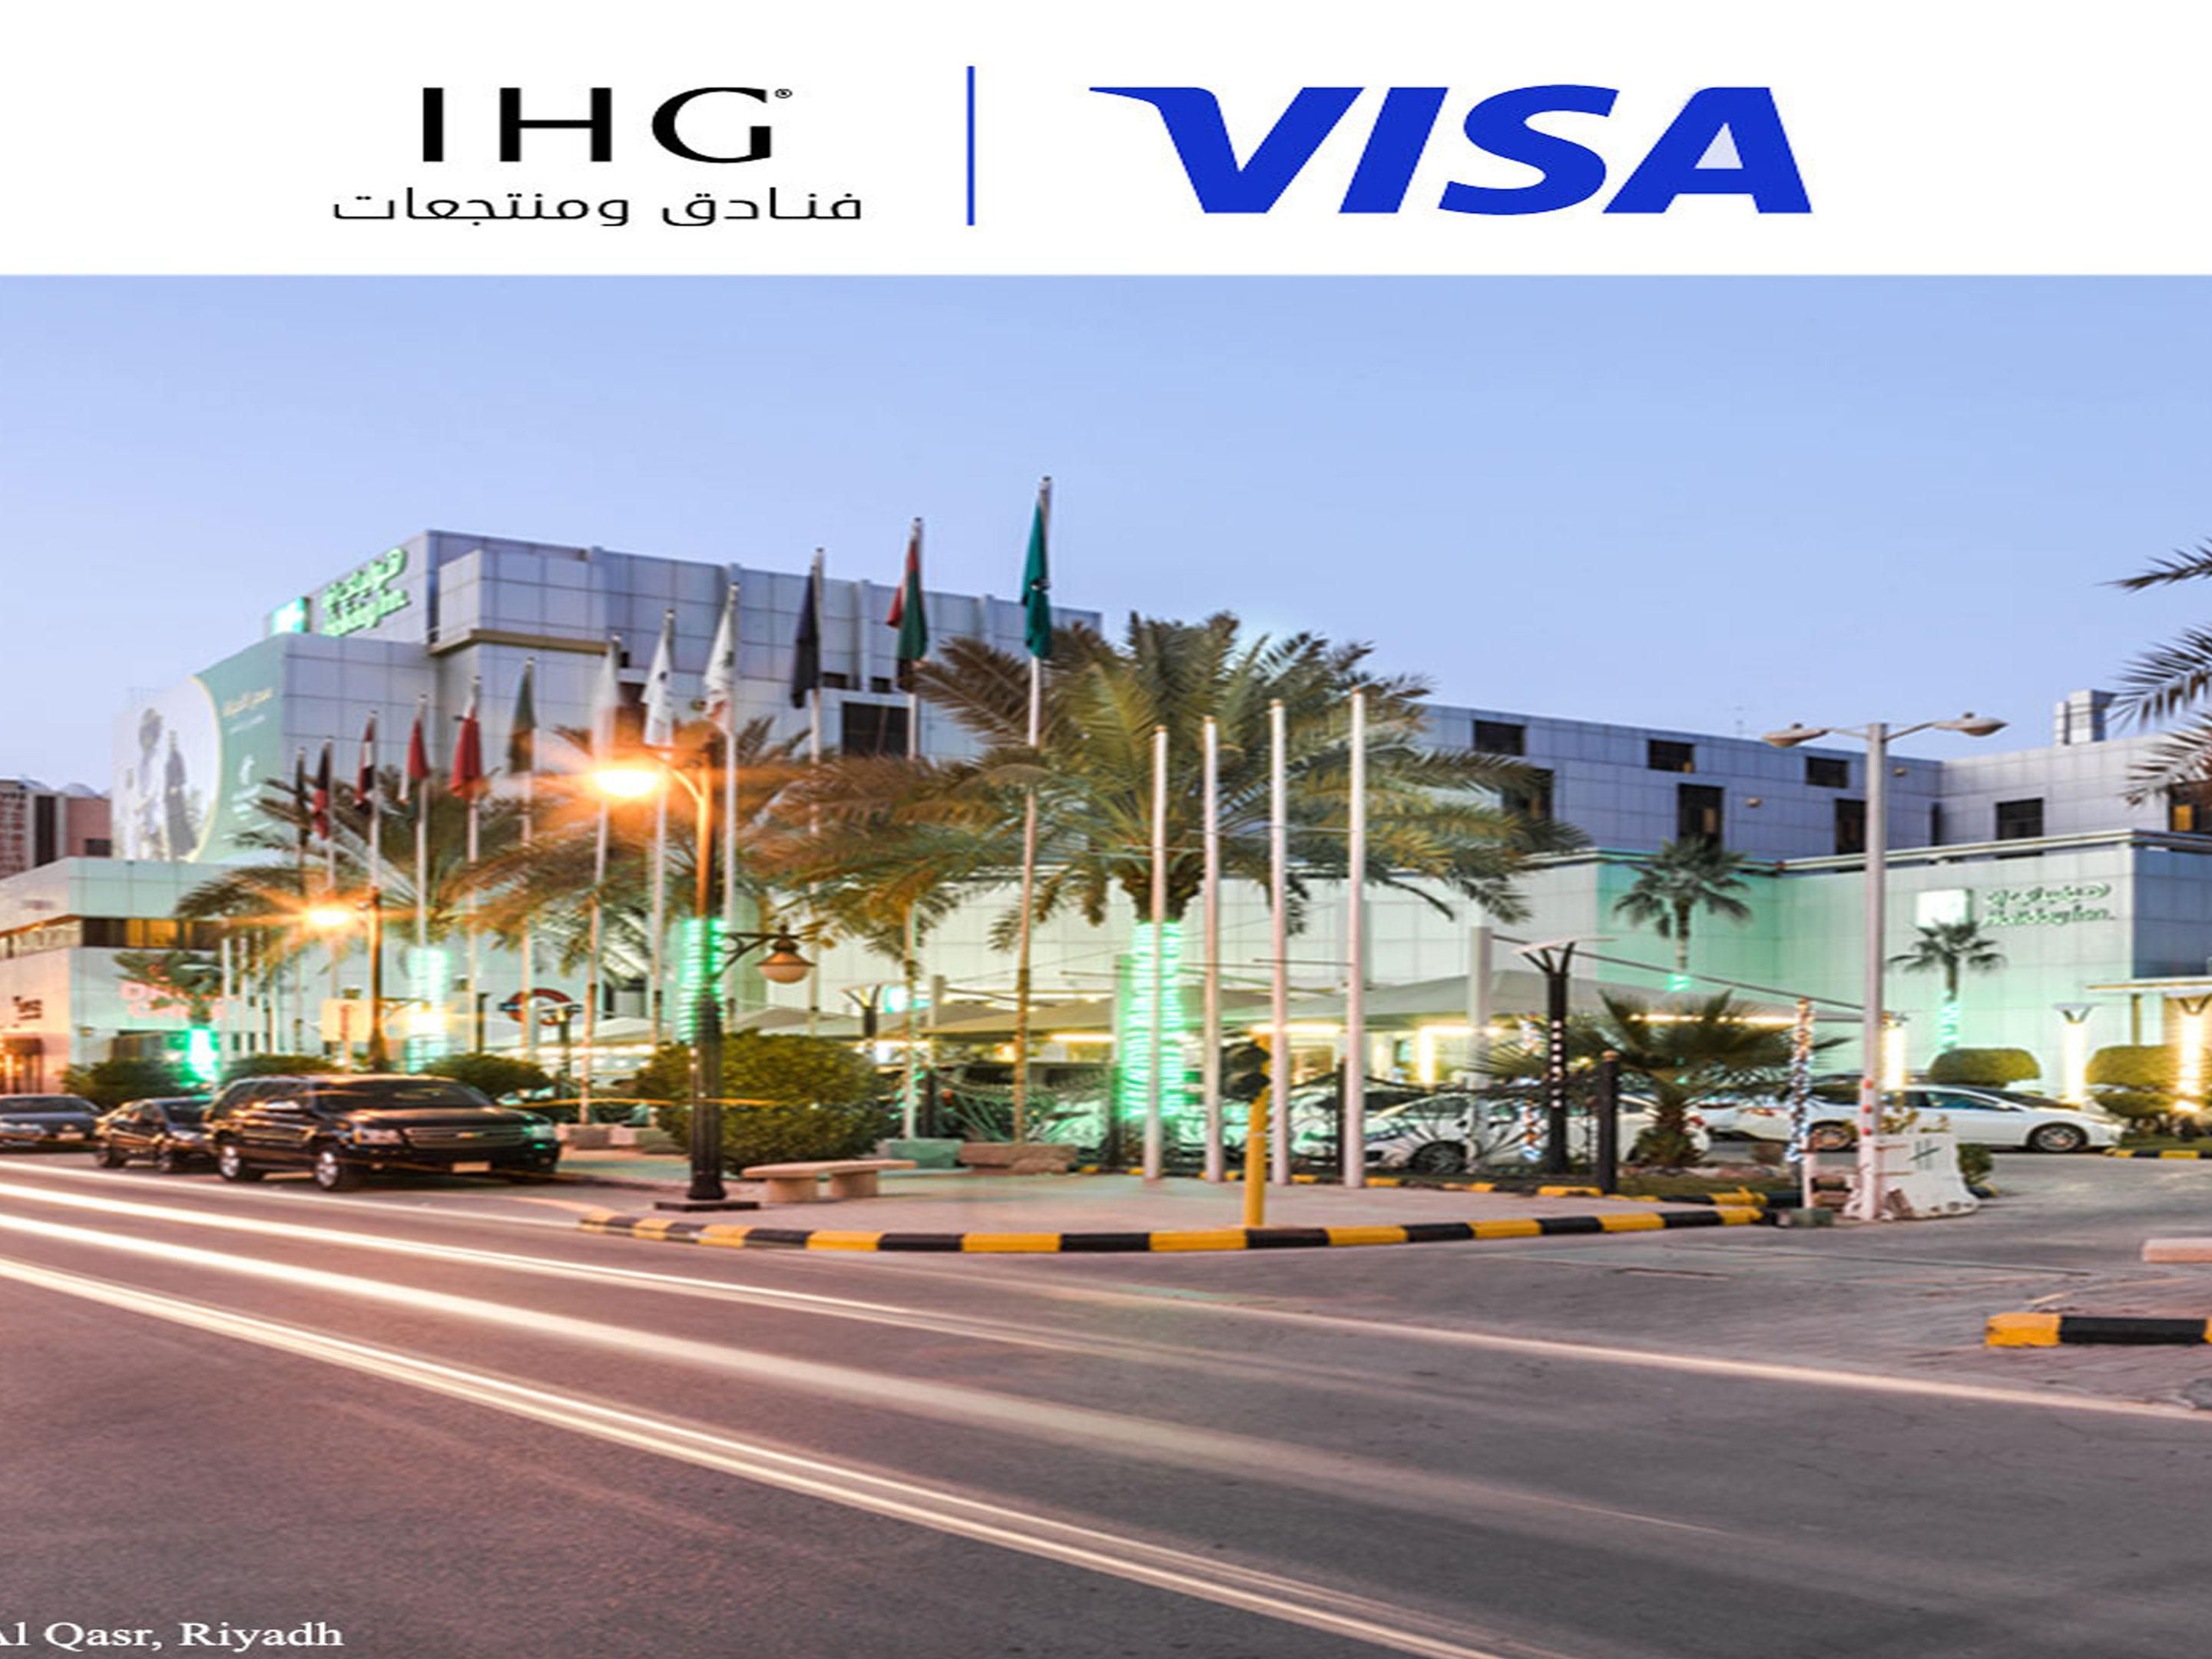 Special Offer for Visa Cardholders